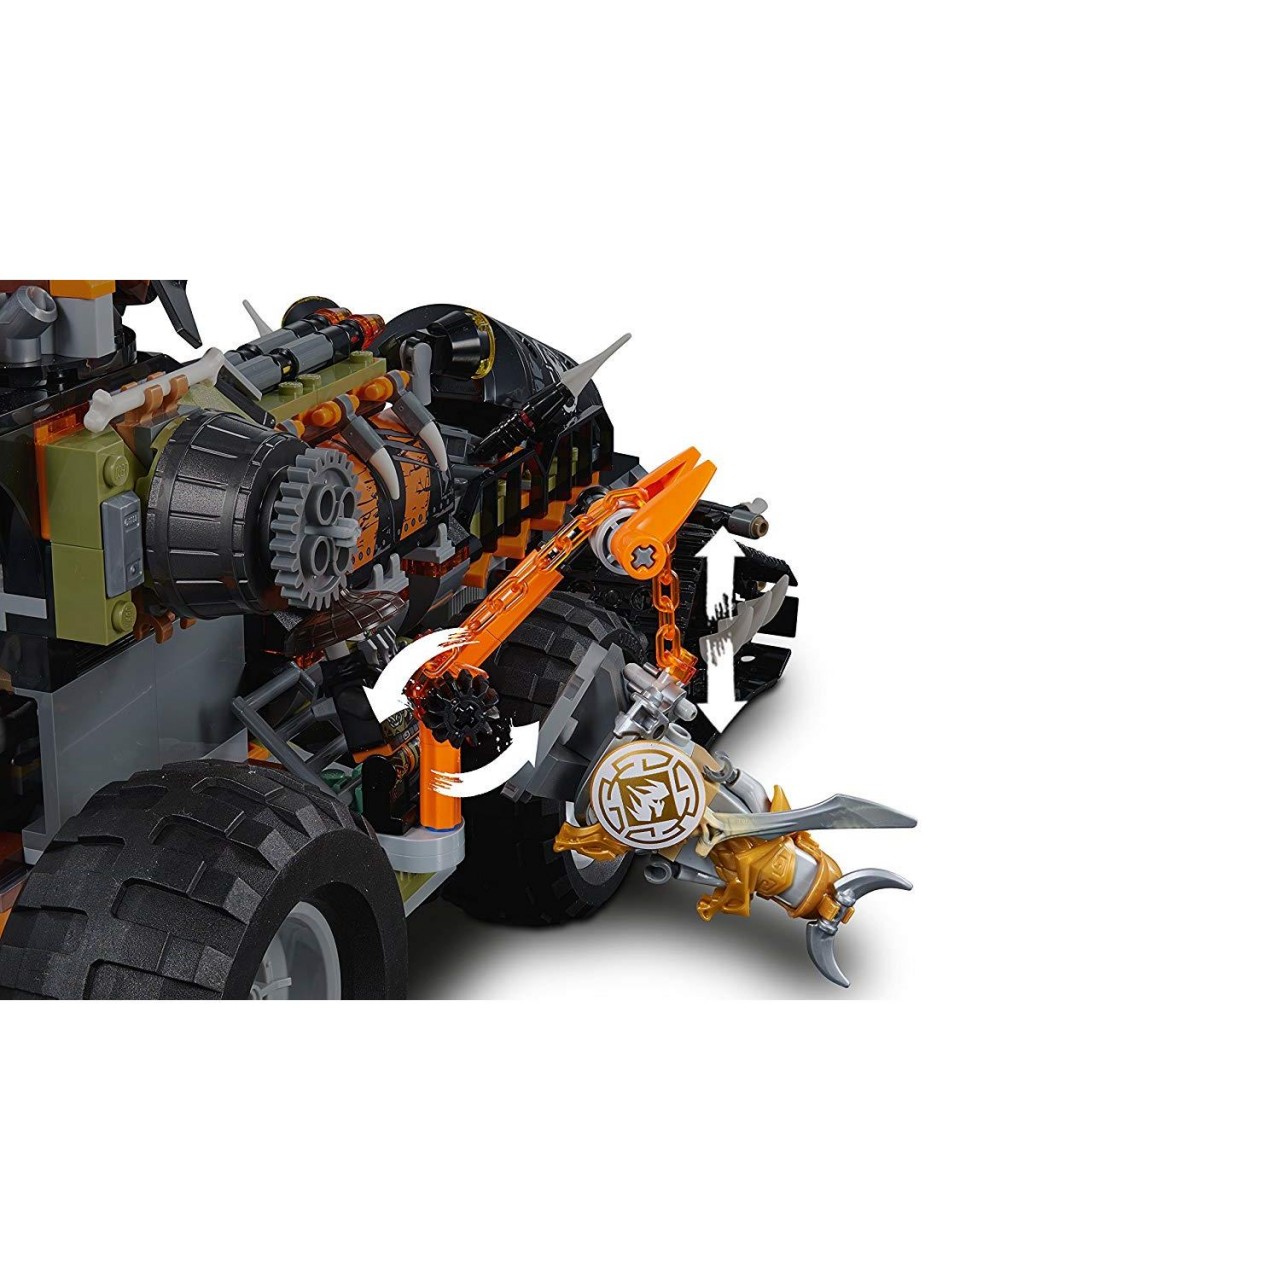 LEGO NINJAGO 70654 Drachen-Fänger